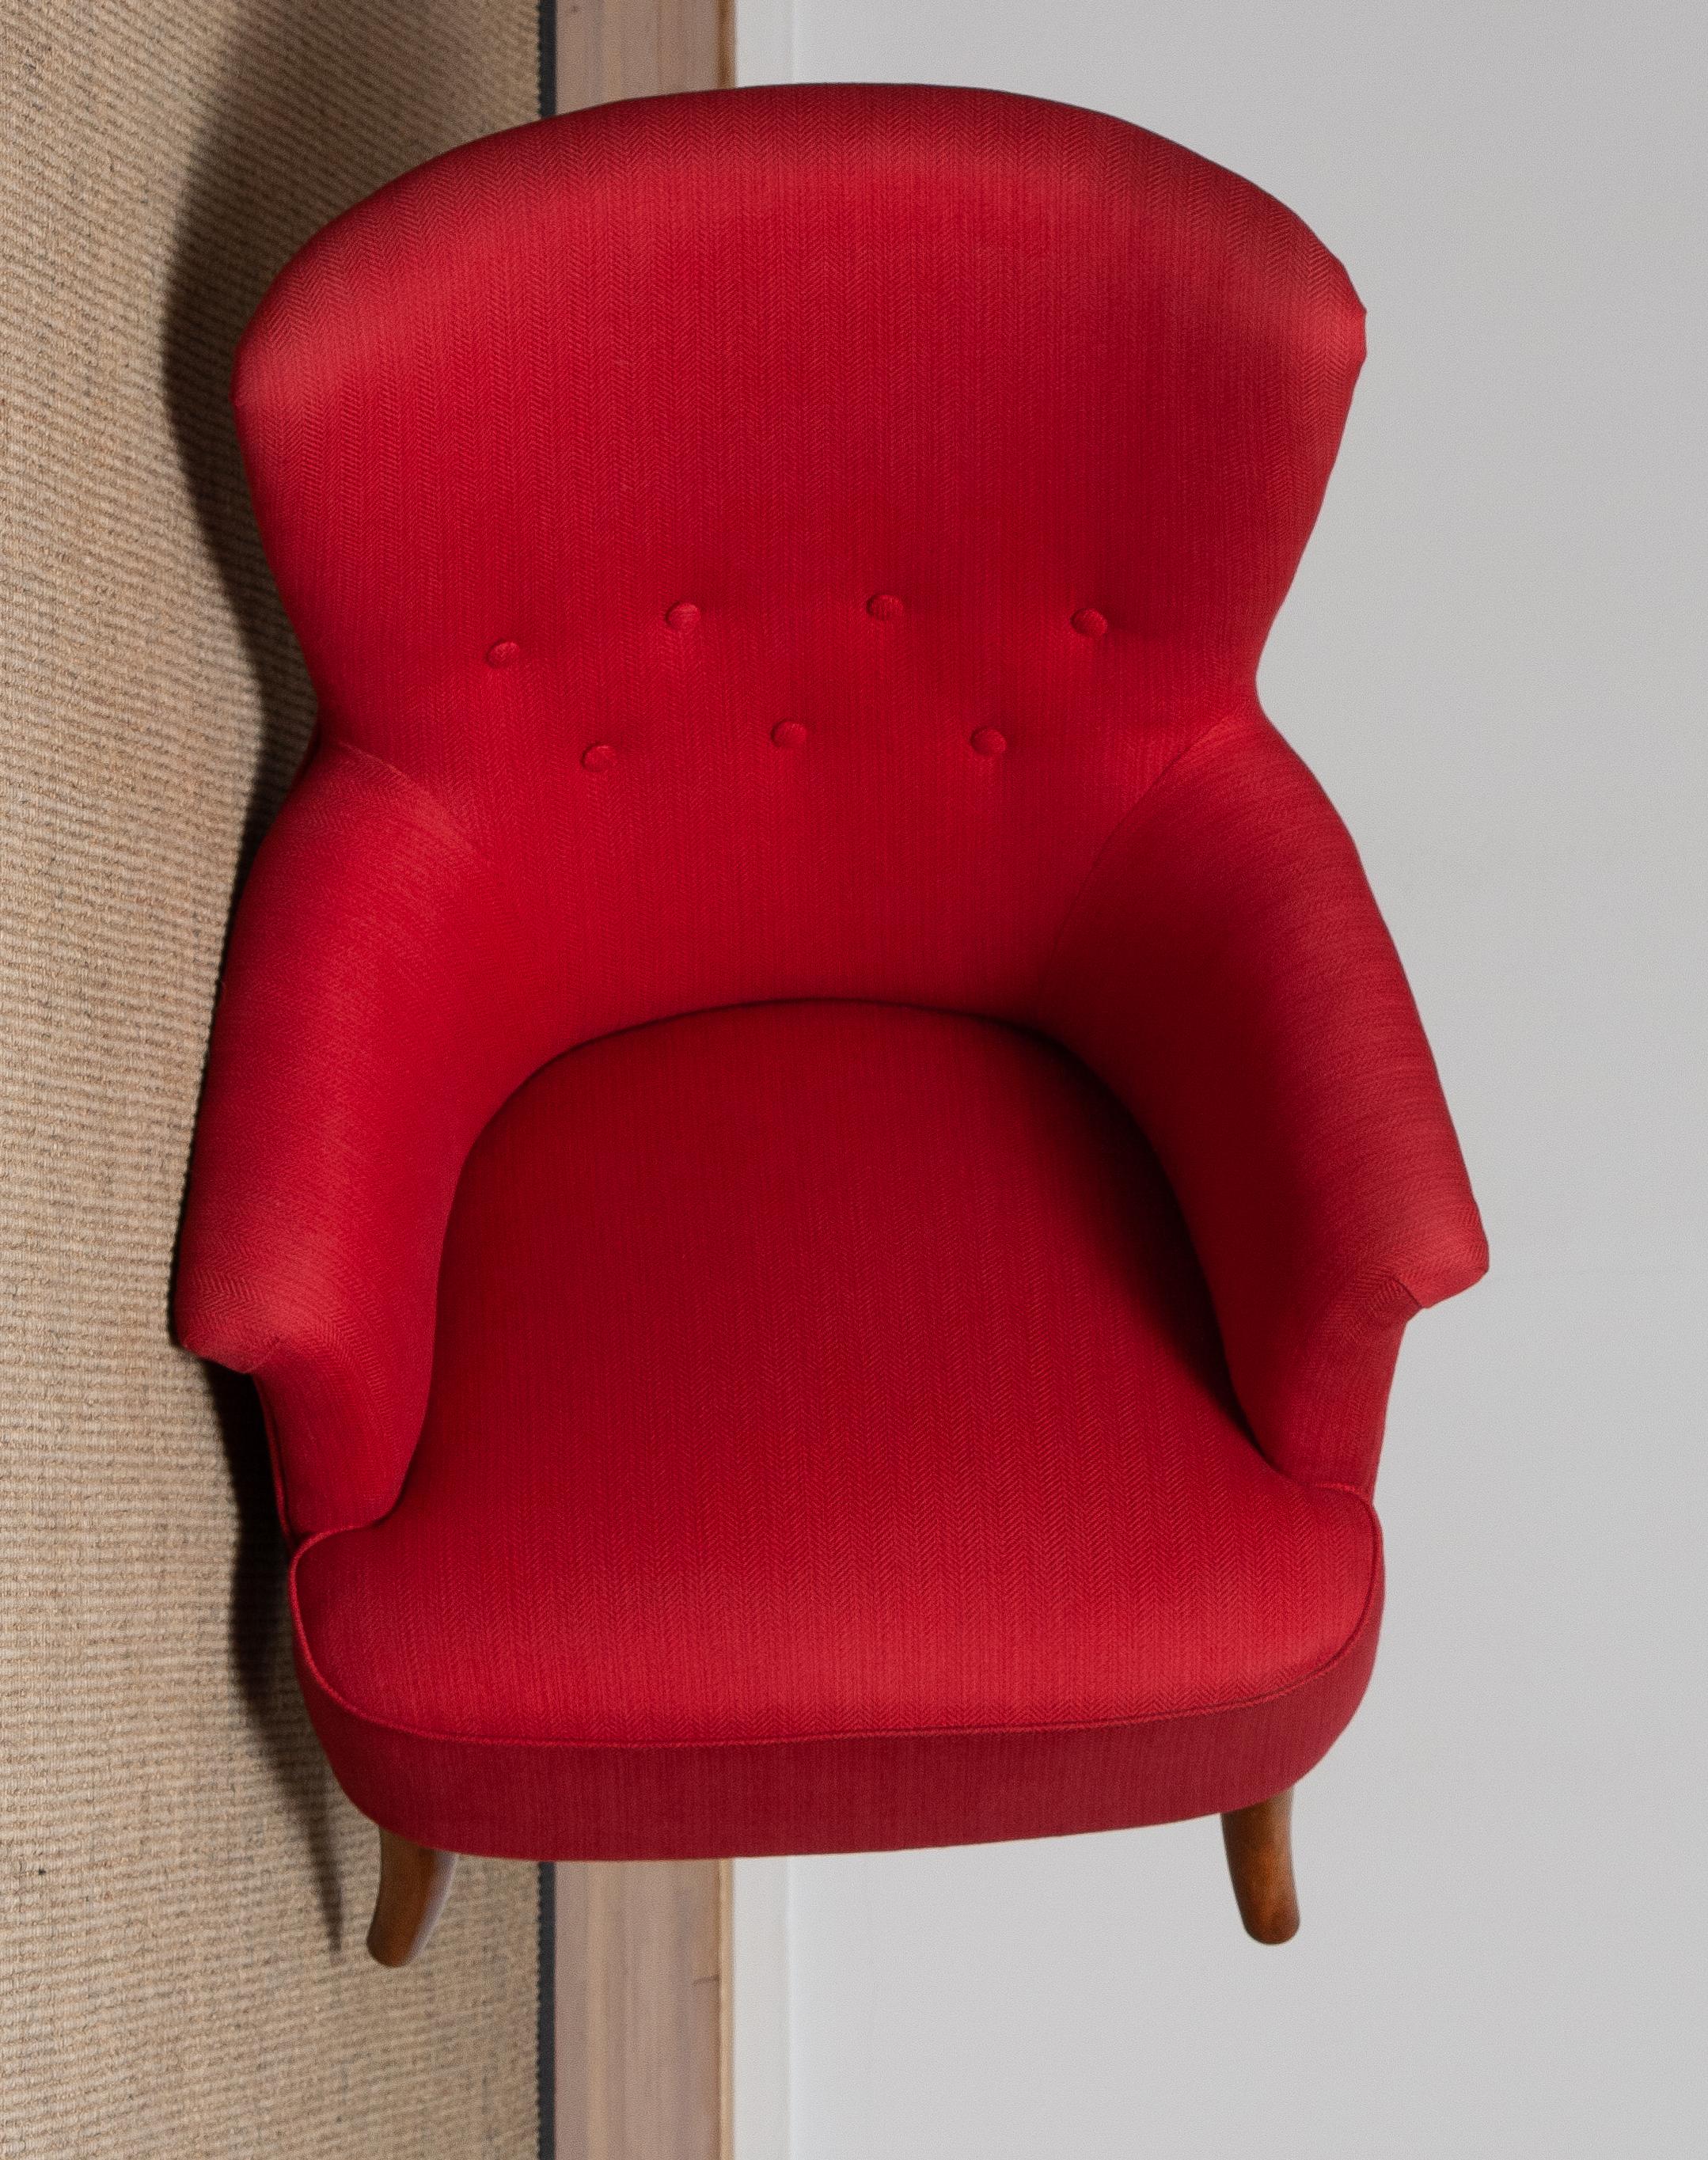 1940s, Fuchsia Easy or Lounge Chair by Carl Malmsten for Oh Sjogren, Sweden 7